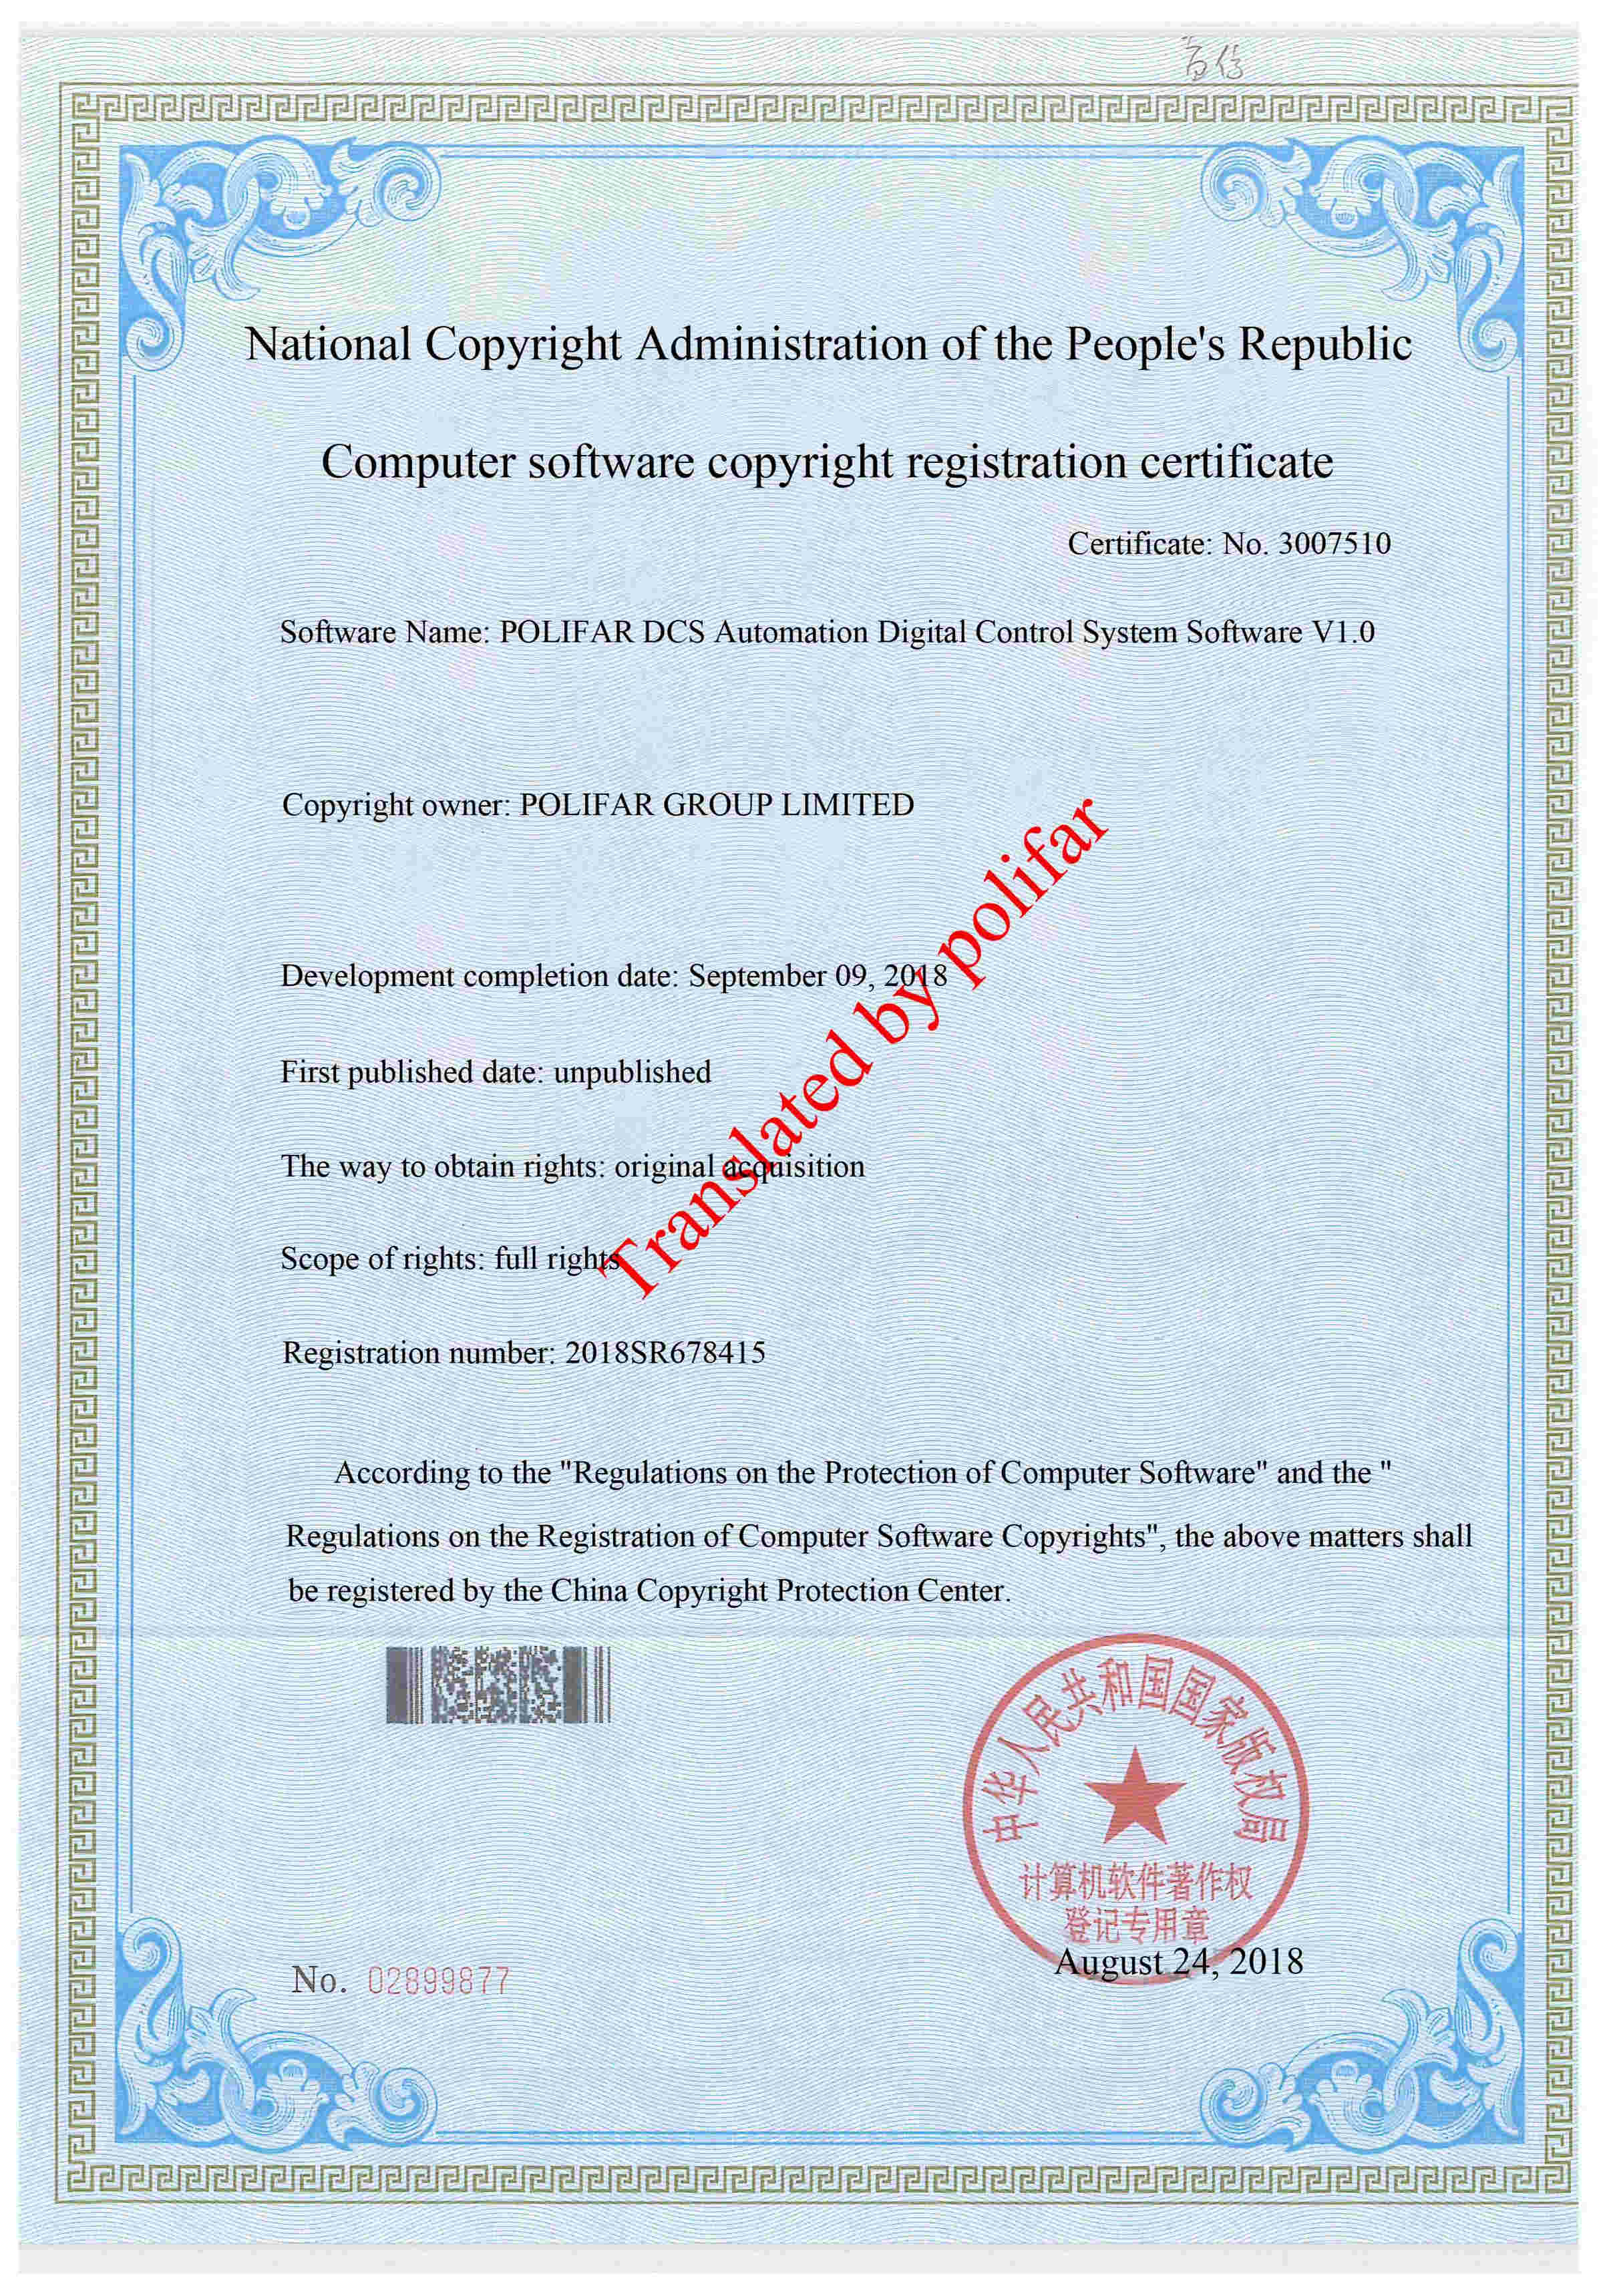 POLIFAR DCS 자동화 디지털 제어 시스템 소프트웨어 V1.0